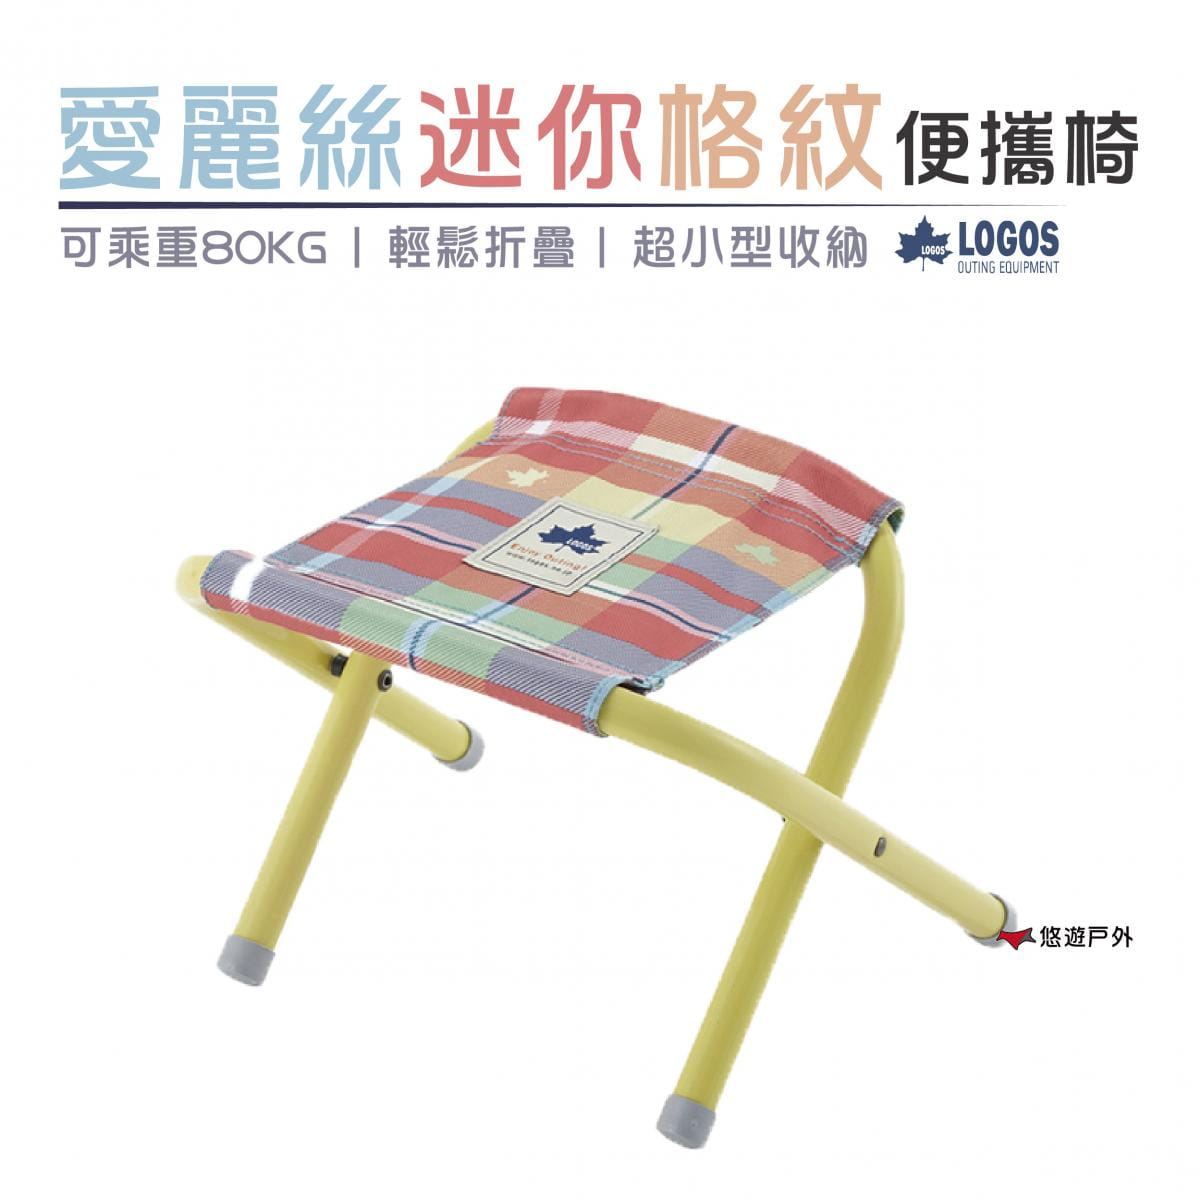 【日本LOGOS】愛麗絲迷你格紋便攜椅紅_LG73175030 (悠遊戶外) 0